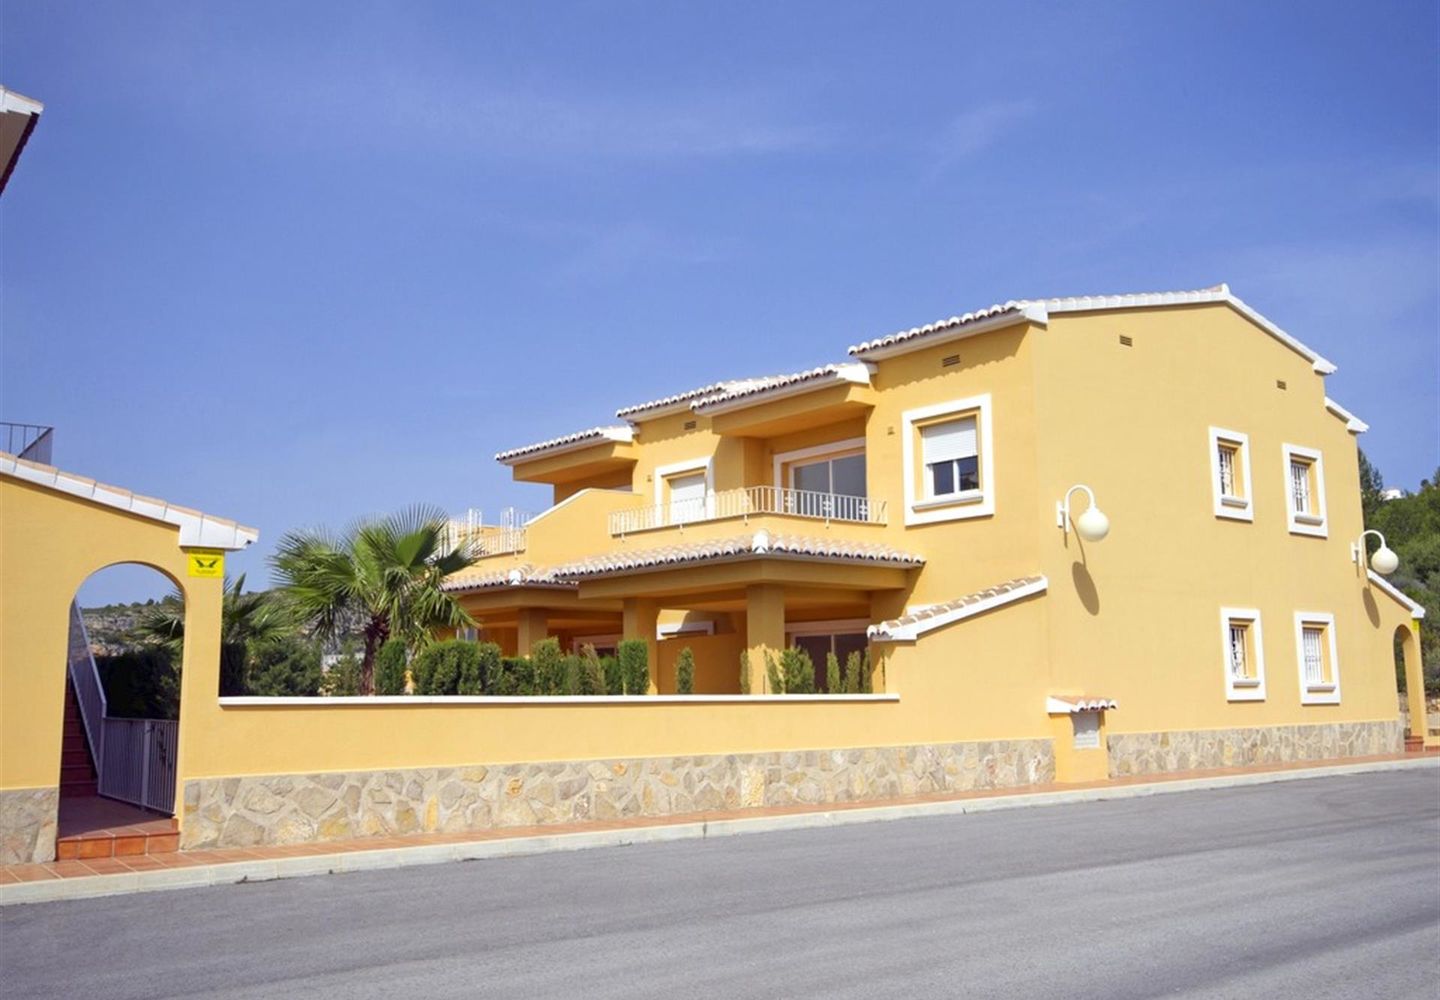 Casalina España stelt te koop een nieuwbouwappartement gelegen in de Cumbre del Sol in het hartje van de Costa Blanca Noord. Enkele dagen, een vakantieperiode, een langere tijdspanne, het hele jaar door genieten. Wat uw keuze ook is, in Cumbre del Sol be